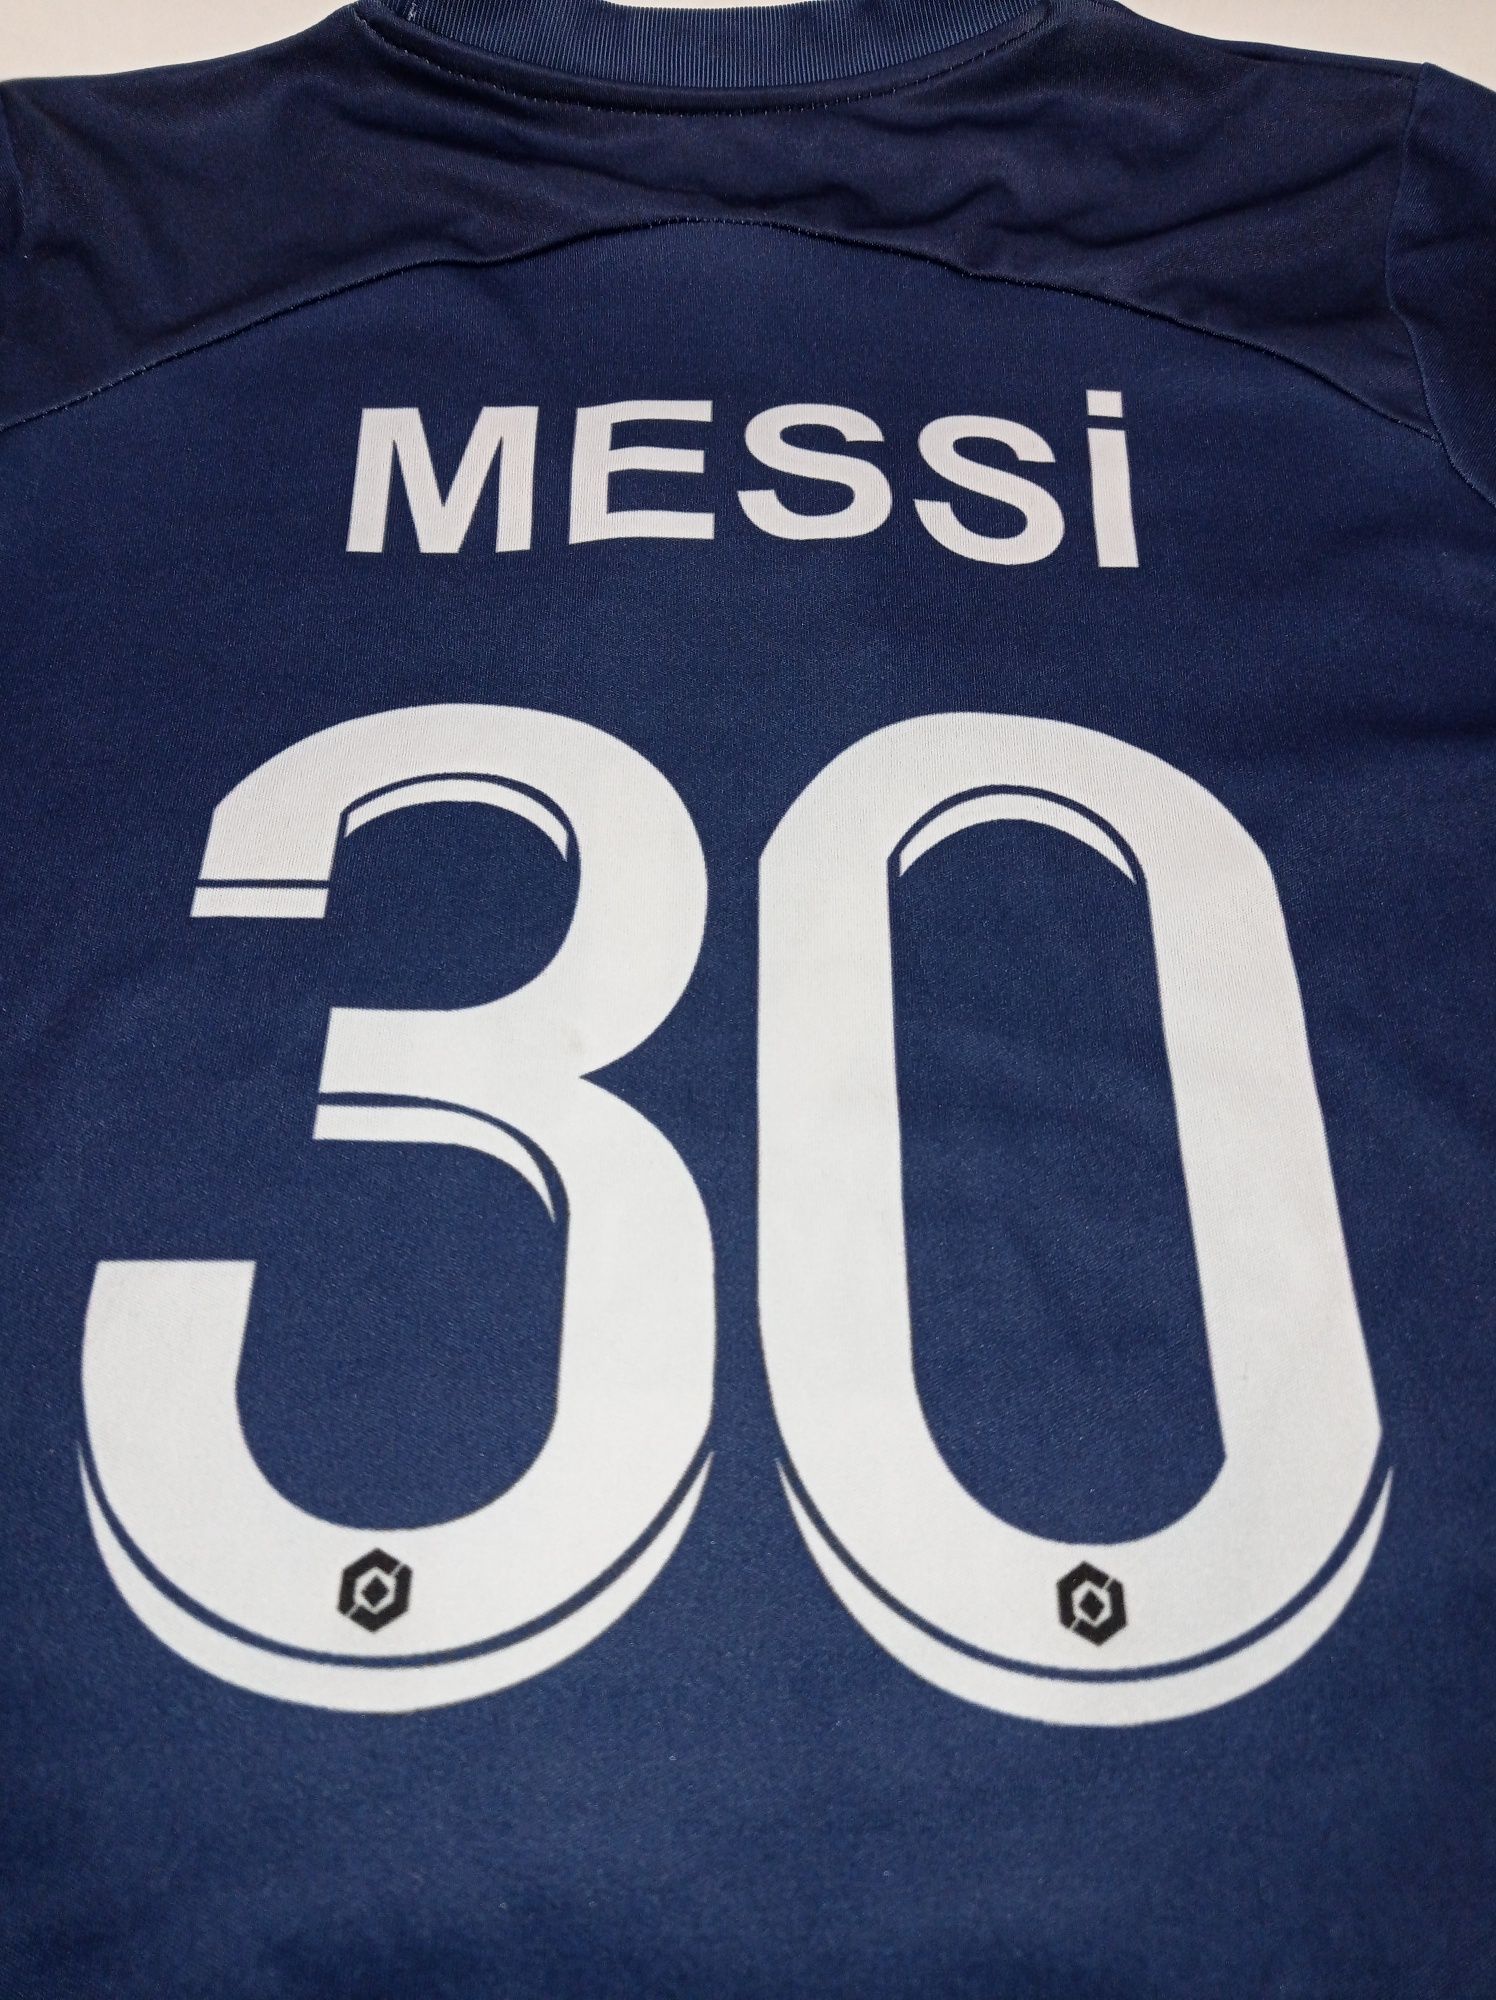 Детская футболка Месси ПСЖ Messi PSG 8-10 лет